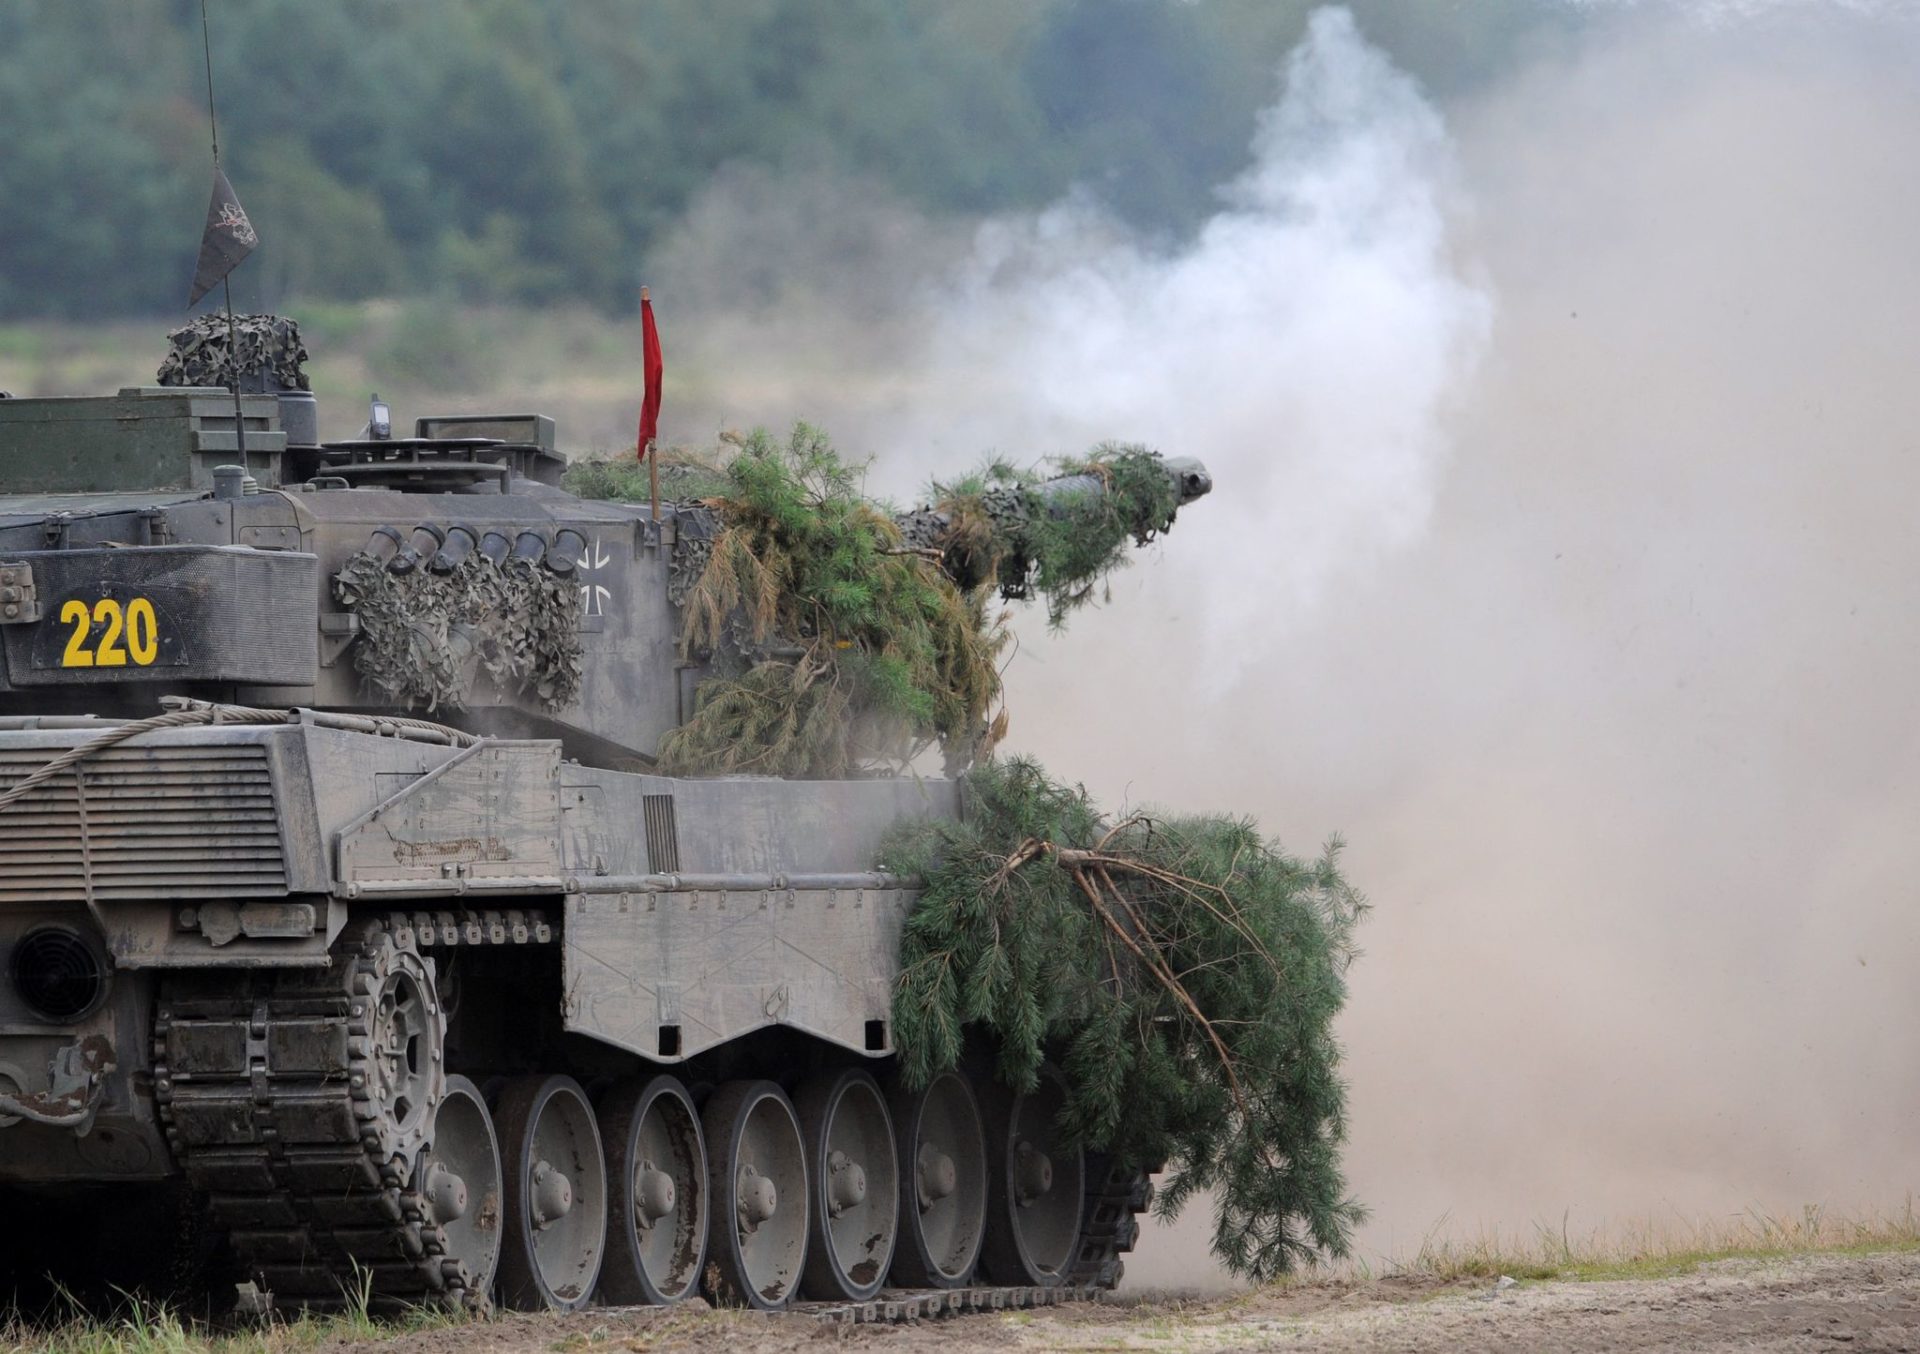 Europa schmiedet Leopard-Panzerallianz